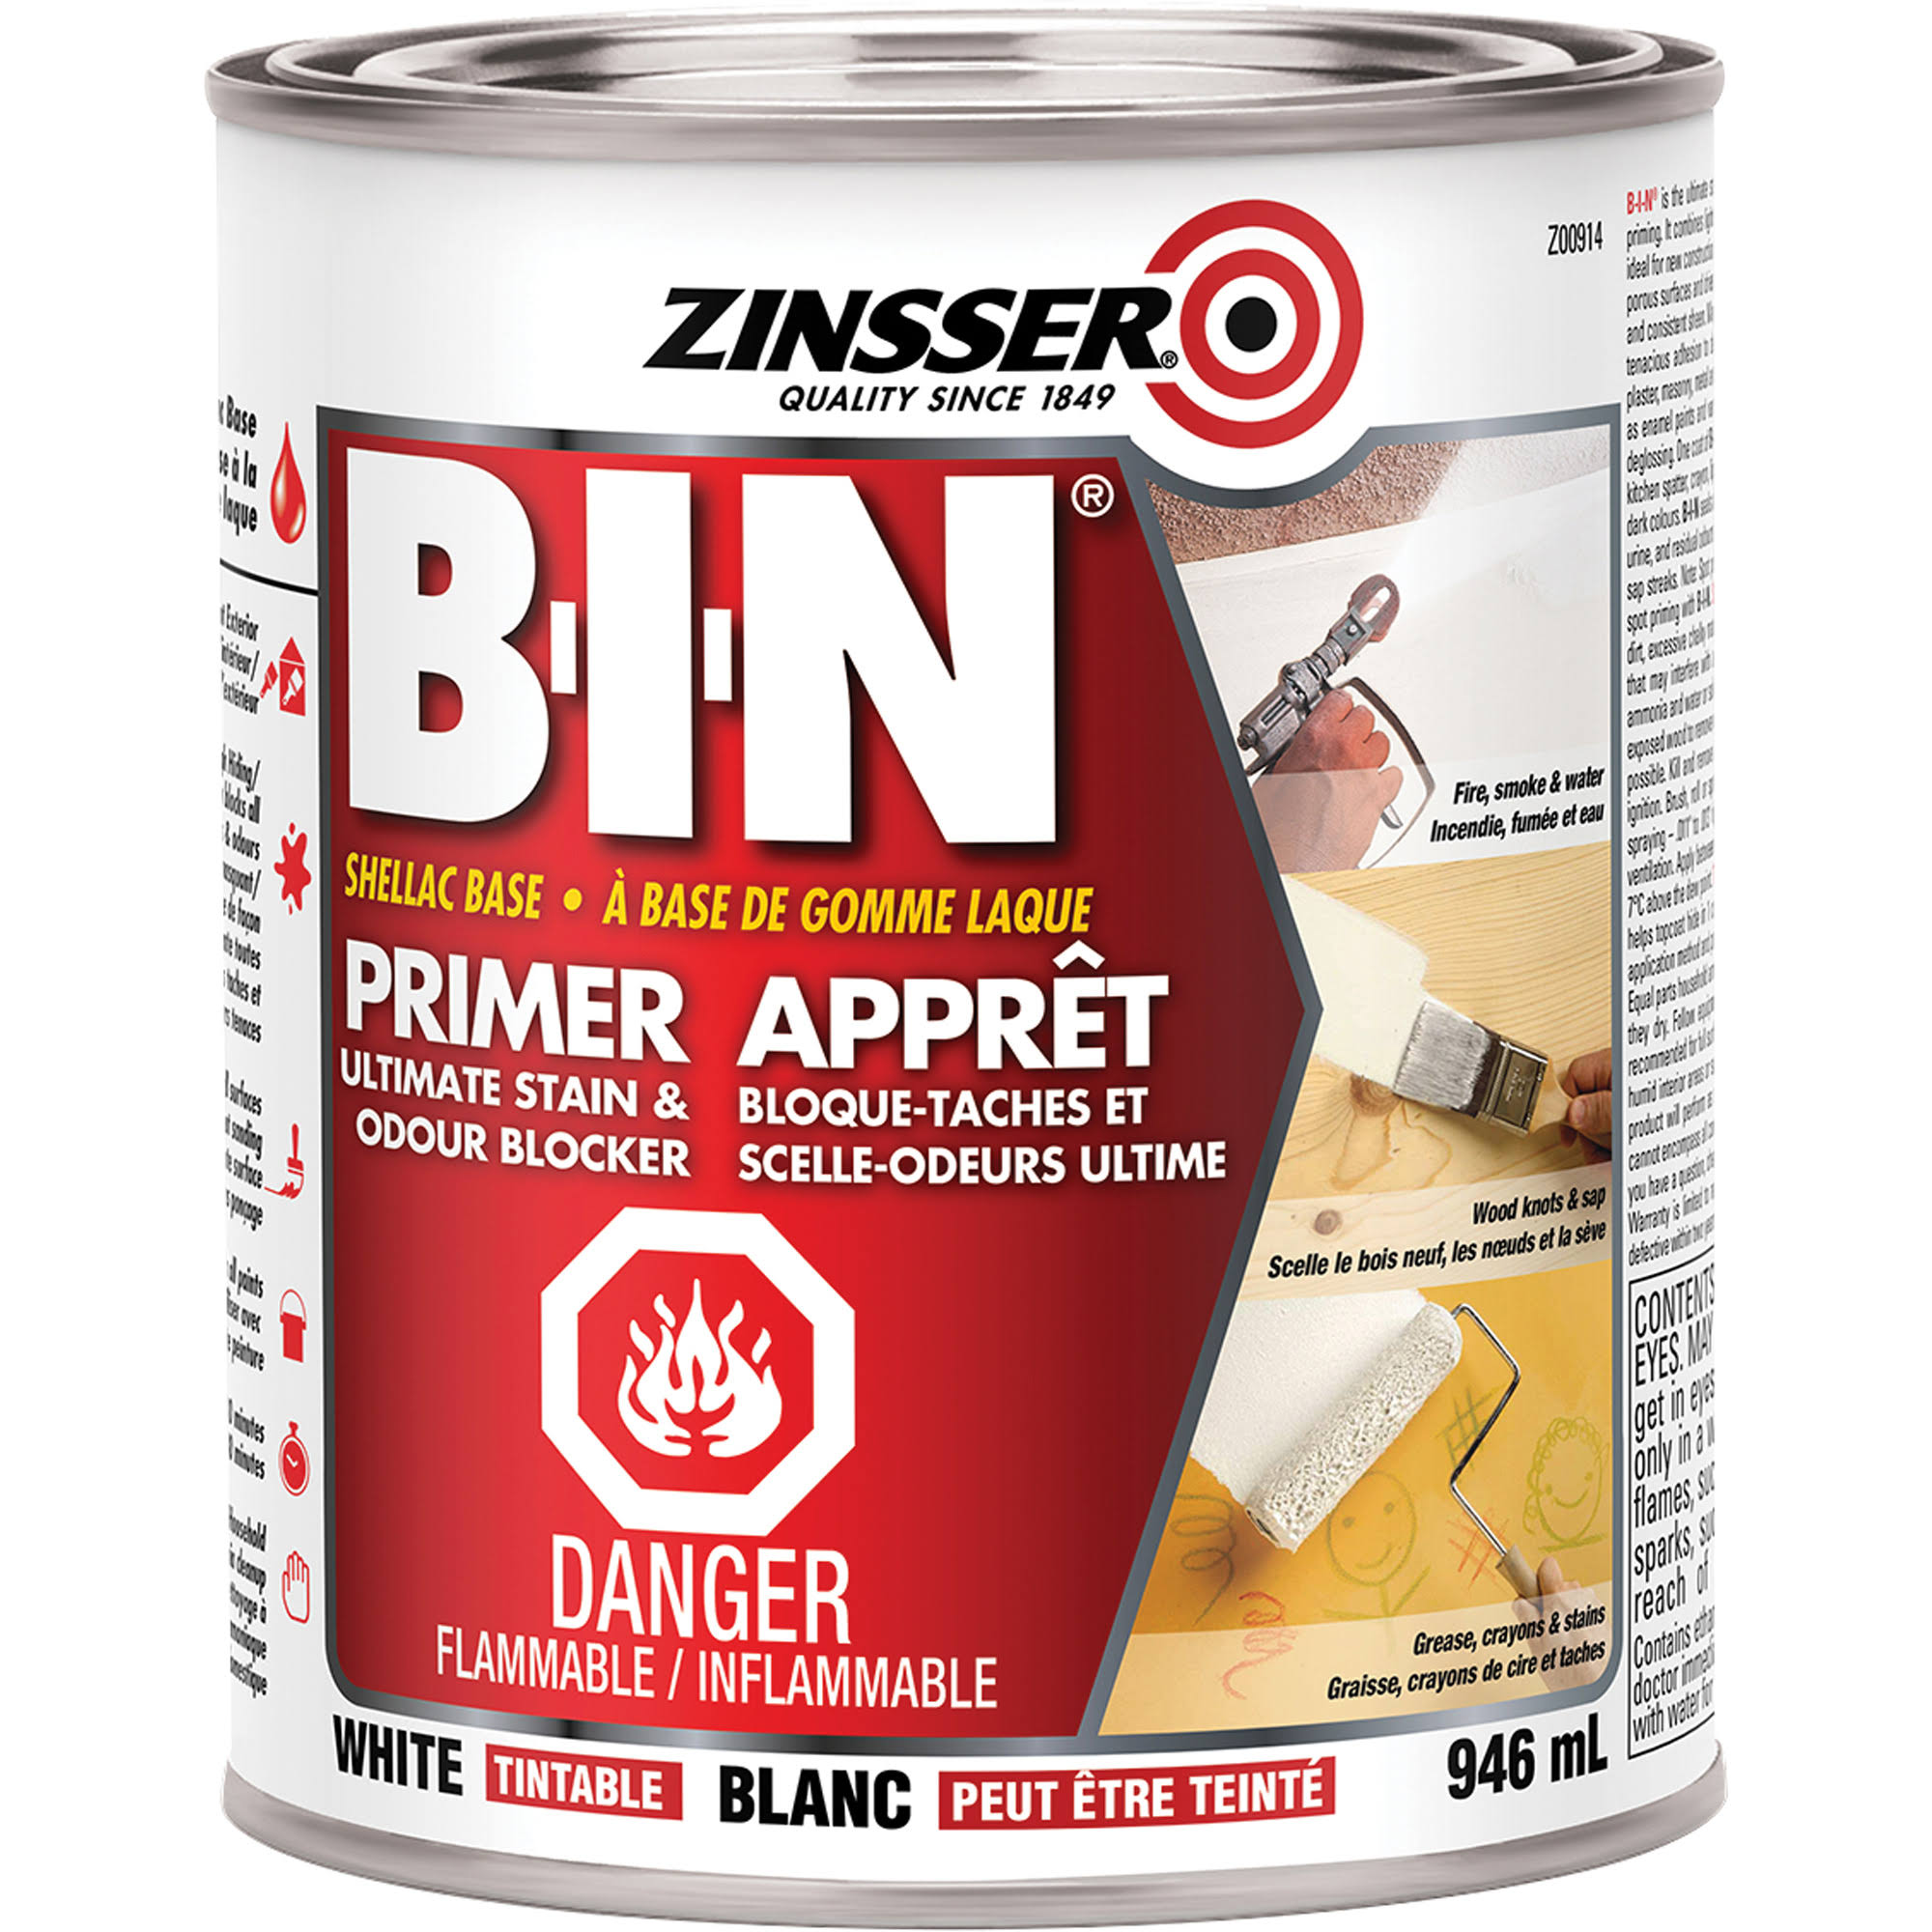 Zinsser B-I-N Shellac Base Primer Sealer Stain Killer - White, 1 Quart